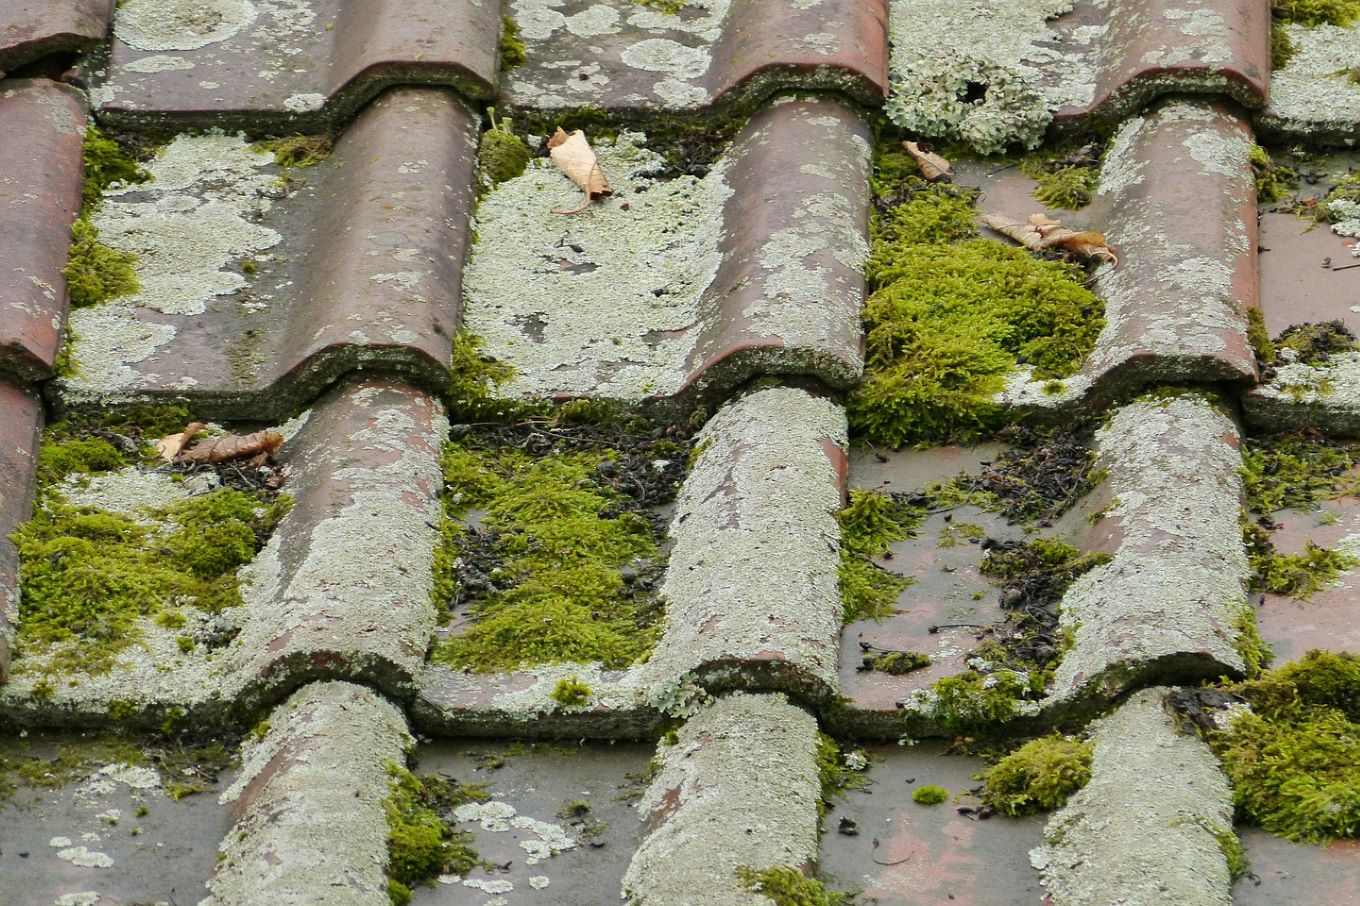 Les produits biocides pour le nettoyage des toitures sont interdits depuis fin 2020. Photo: pixabay.com.